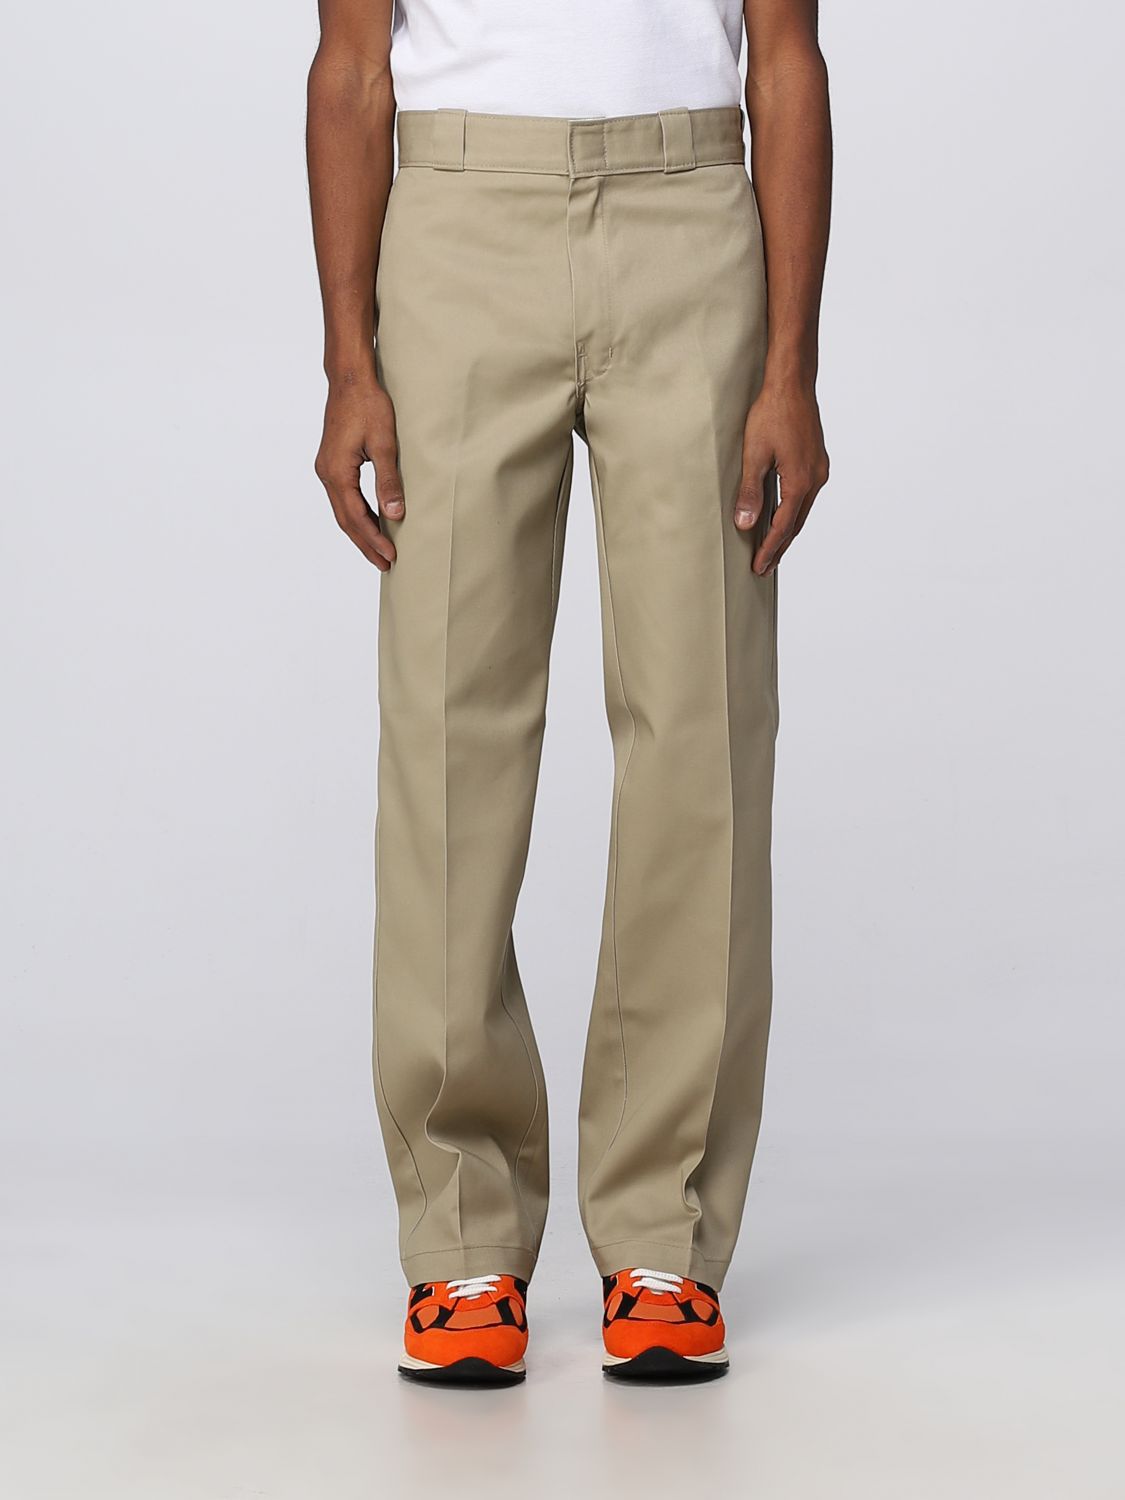 Dickies Outlet: pants for man - Beige | Dickies pants DK0A4XK6 online ...